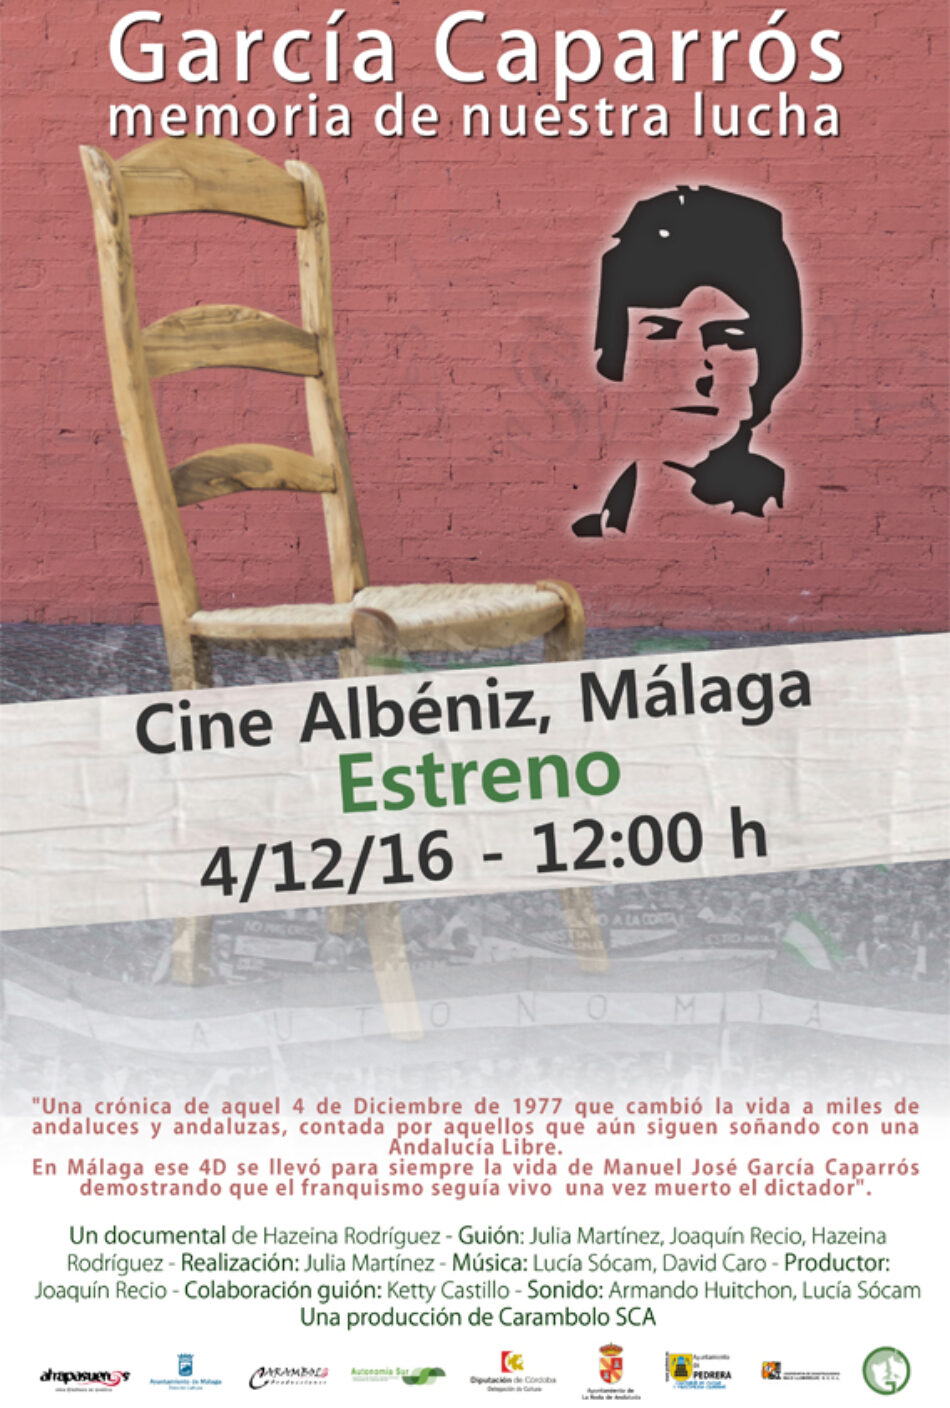 El documental «García Caparrós, memoria de nuestra luca» se estrena en Málaga el 4 de diciembre